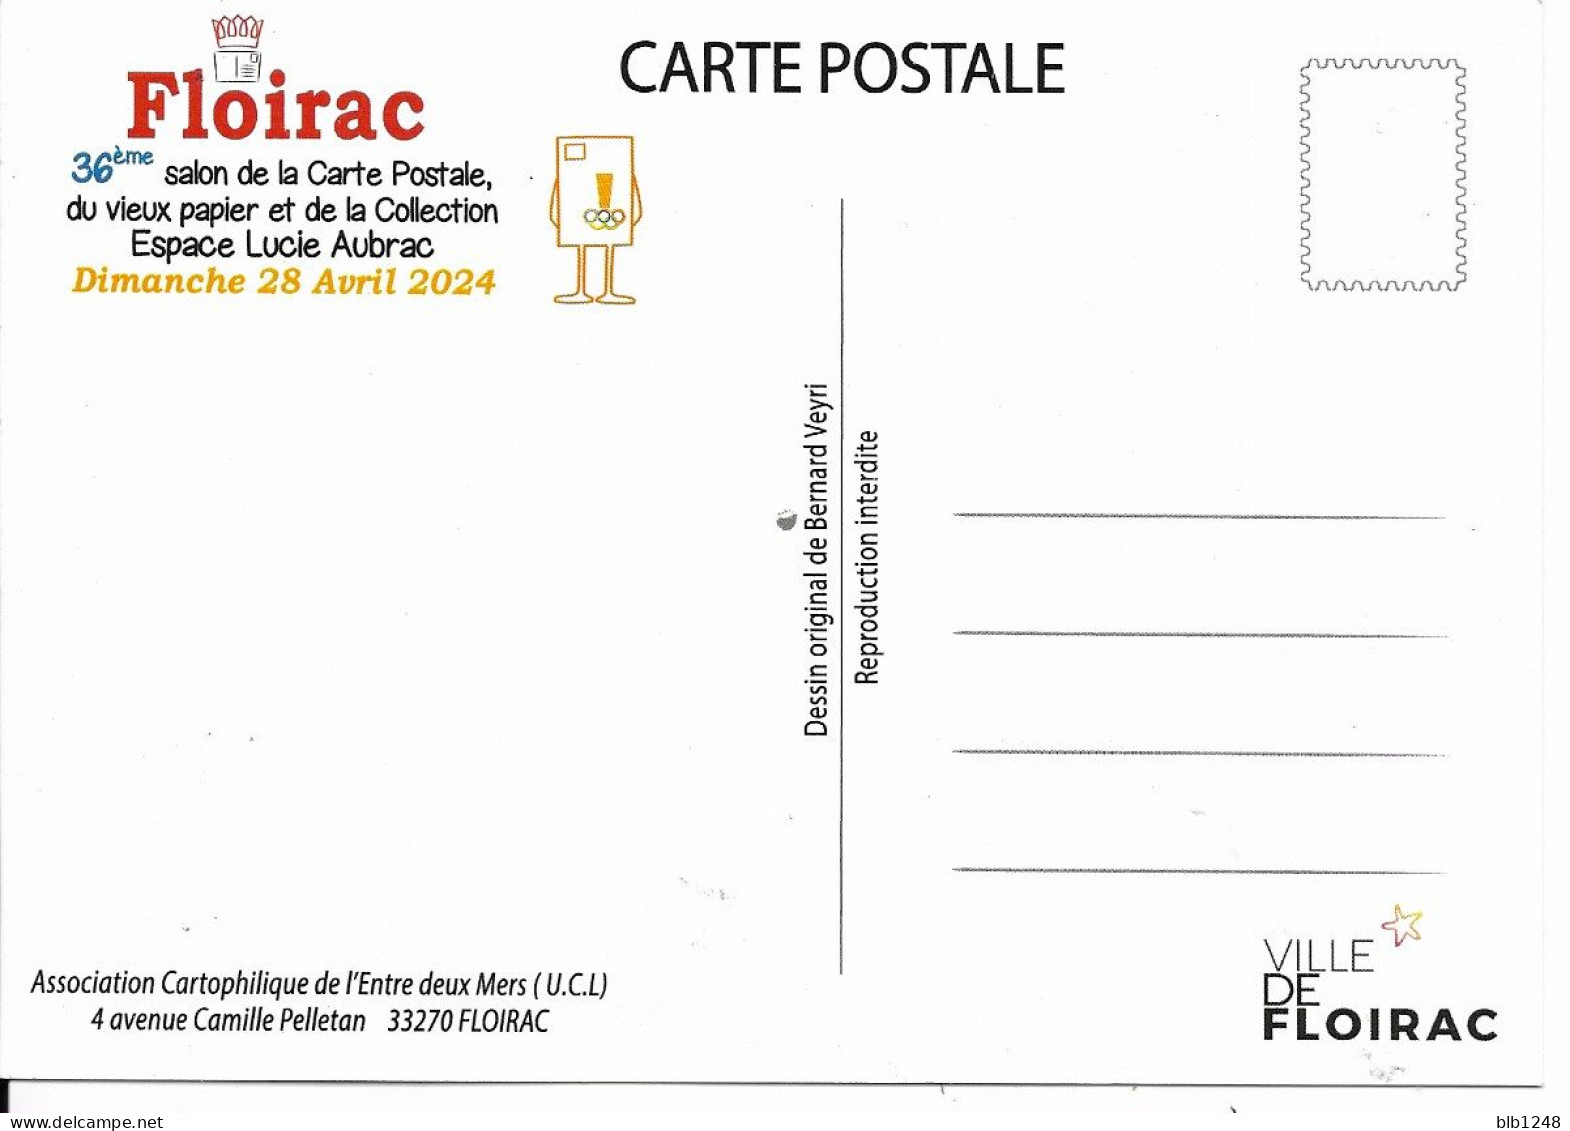 Bourses & Salons De Collections  Floirac 36eme Salon De La Carte Postale 2024 - Sammlerbörsen & Sammlerausstellungen